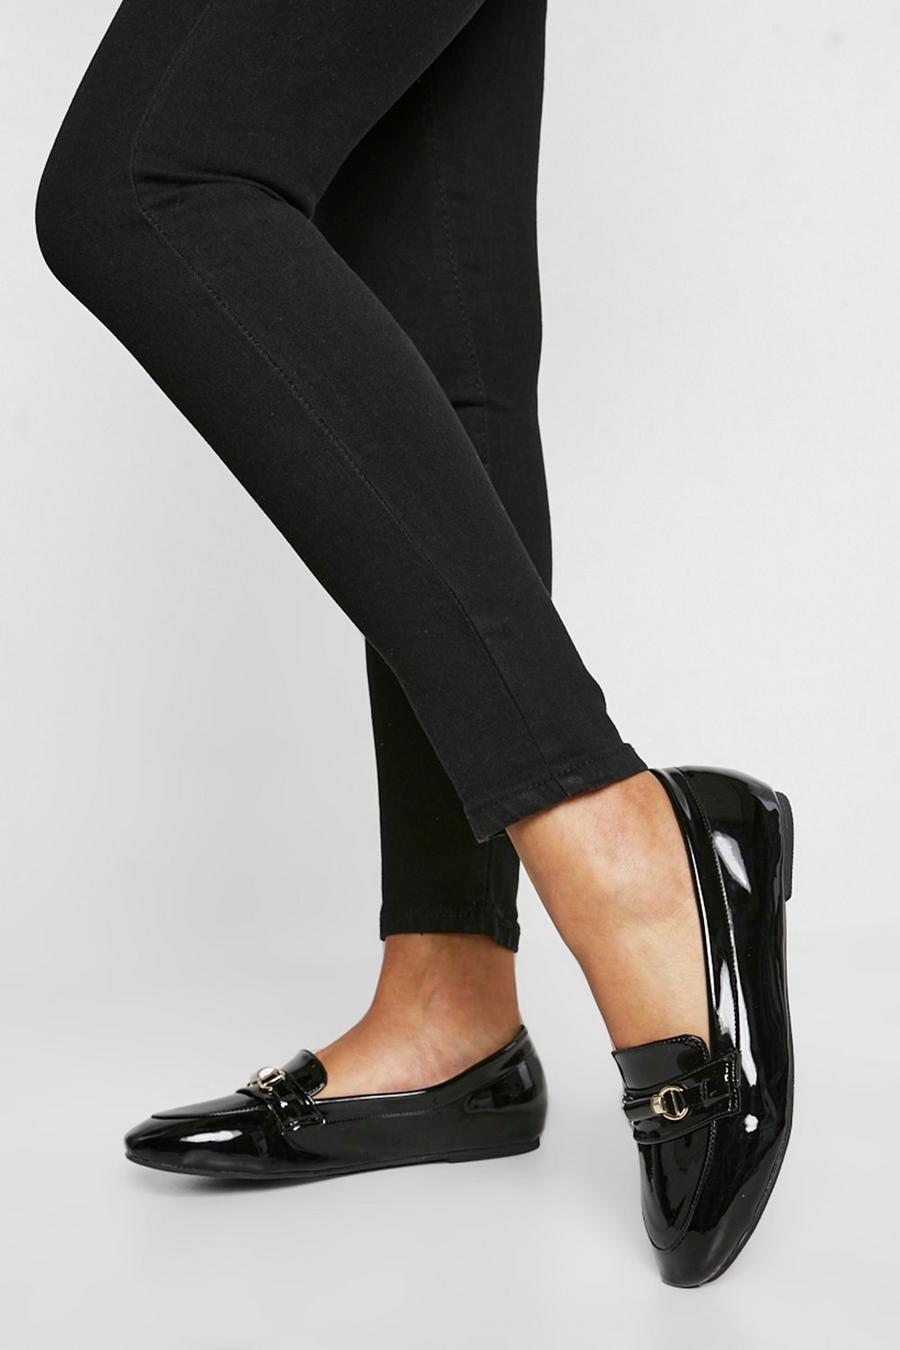 Black svart Loafers med rund tå och bred passform